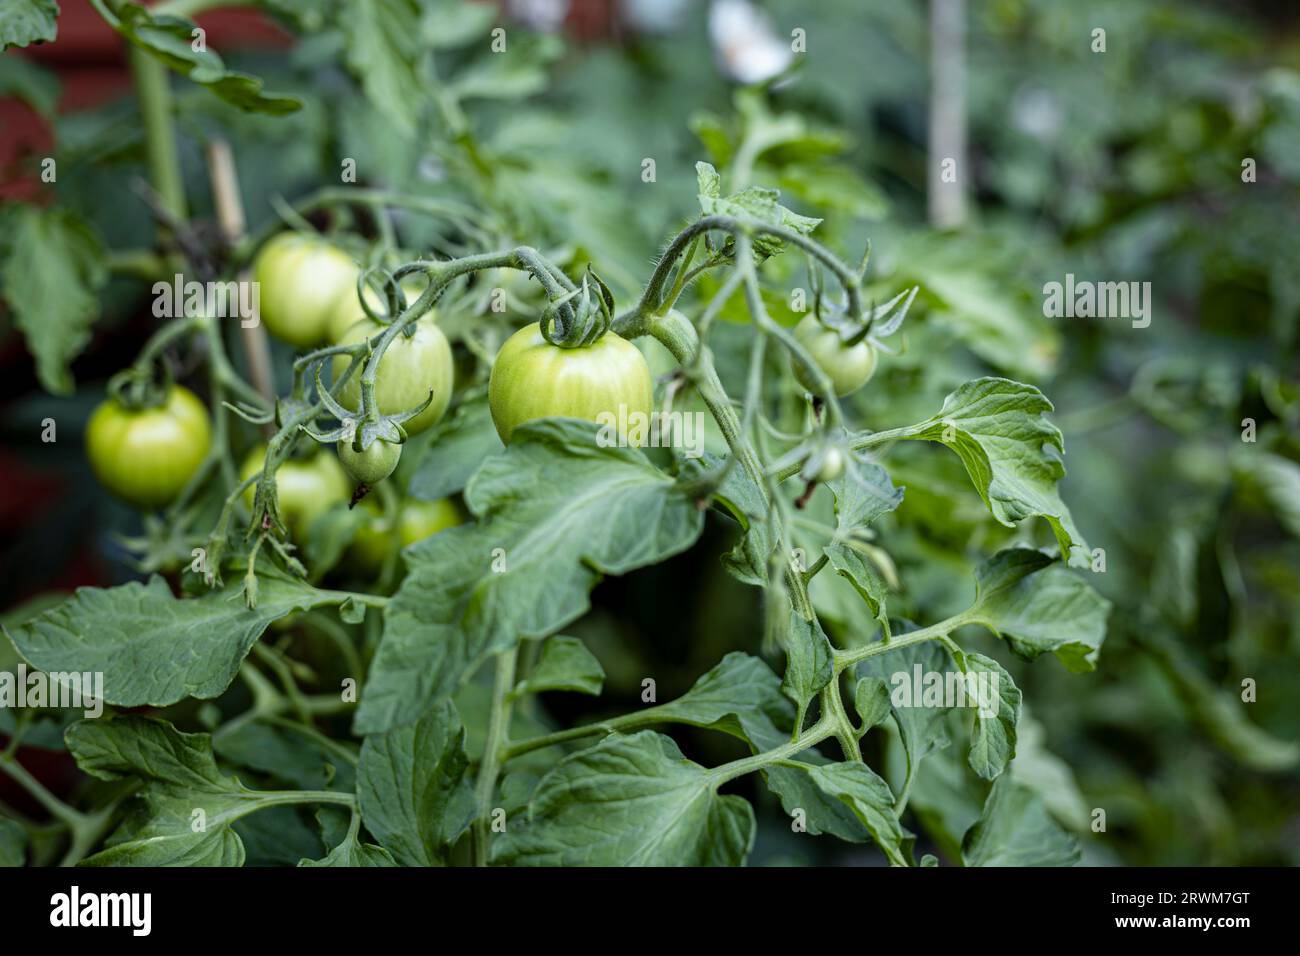 la partie supérieure d'un plant de tomate dans un cadre extérieur, baignée d'une lumière douce. Les tomates vertes peuvent être vues pousser sur la plante, mettant en valeur le thr Banque D'Images